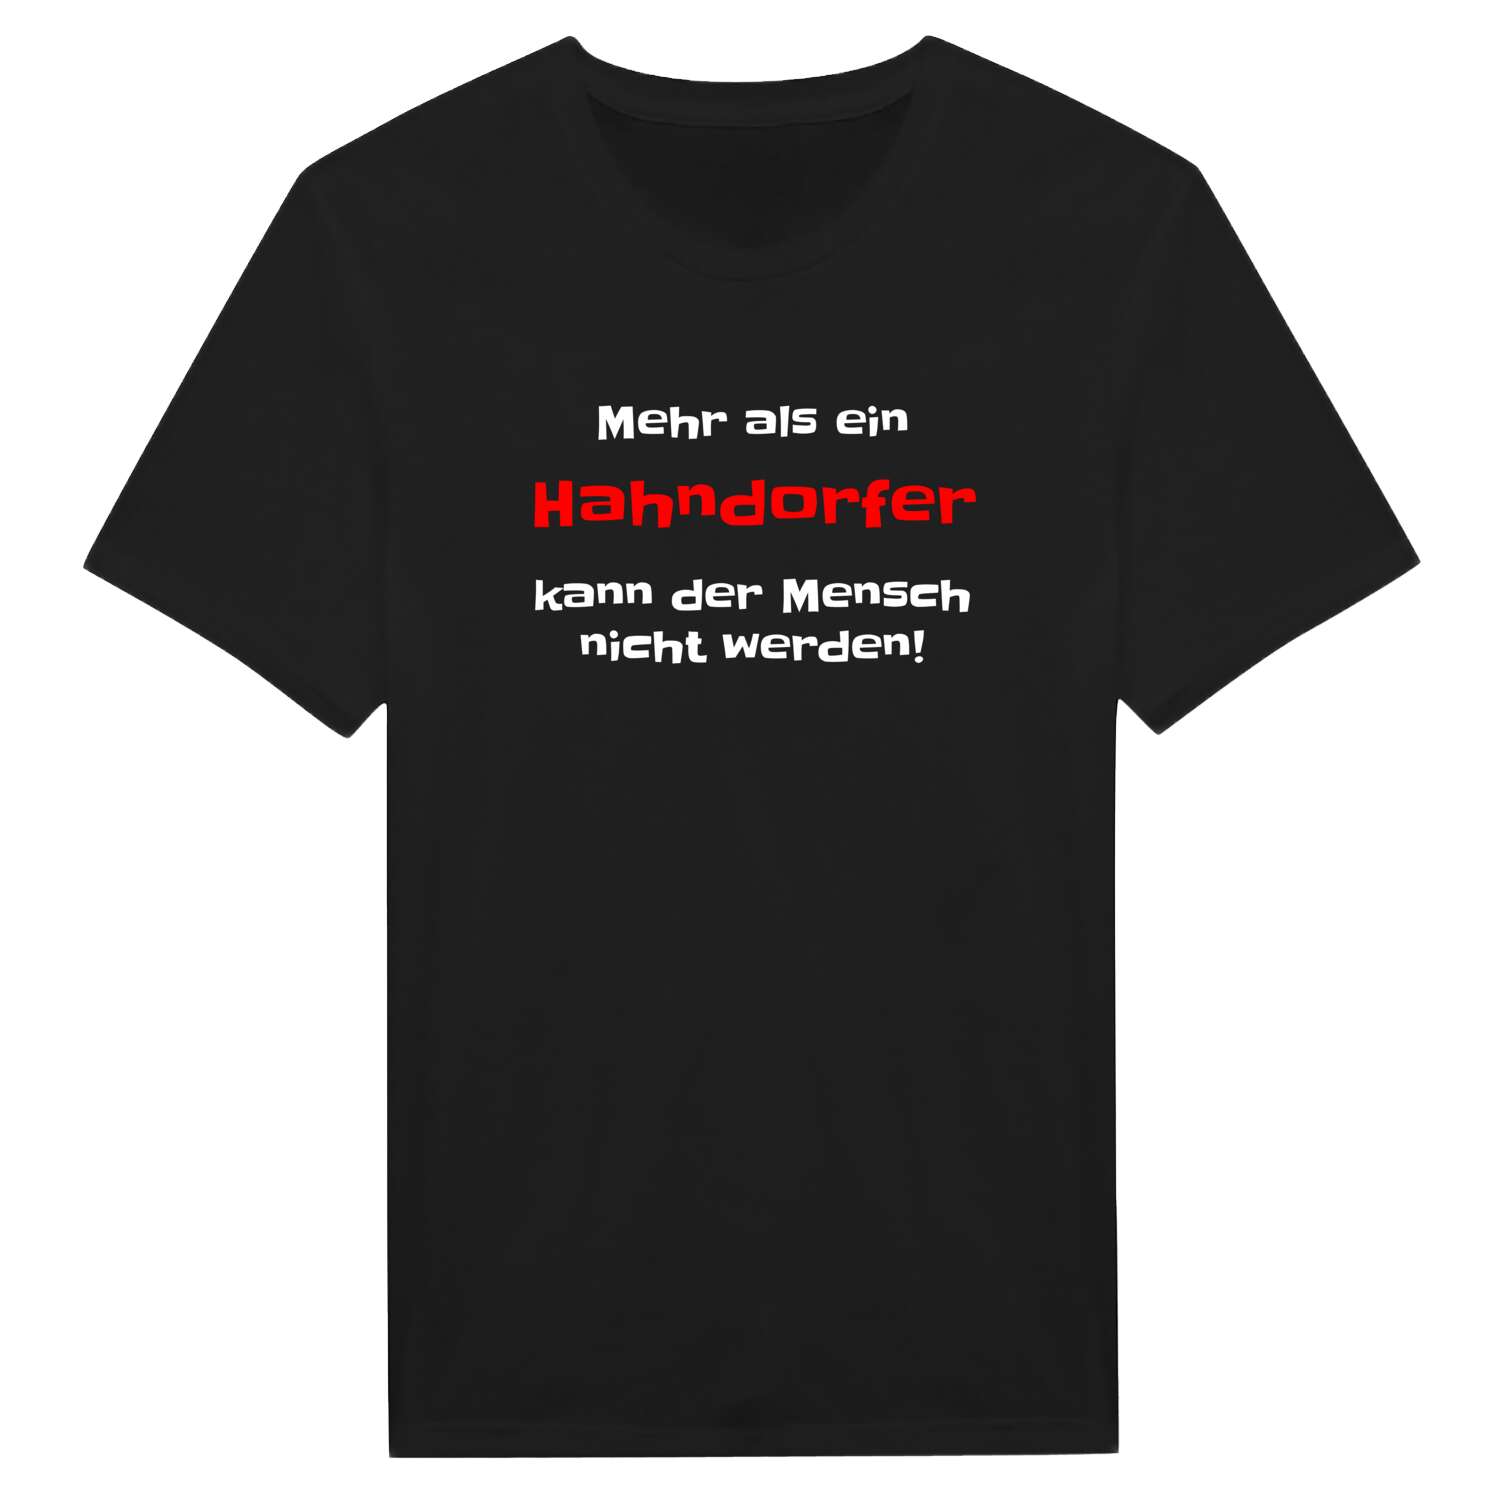 Hahndorf T-Shirt »Mehr als ein«